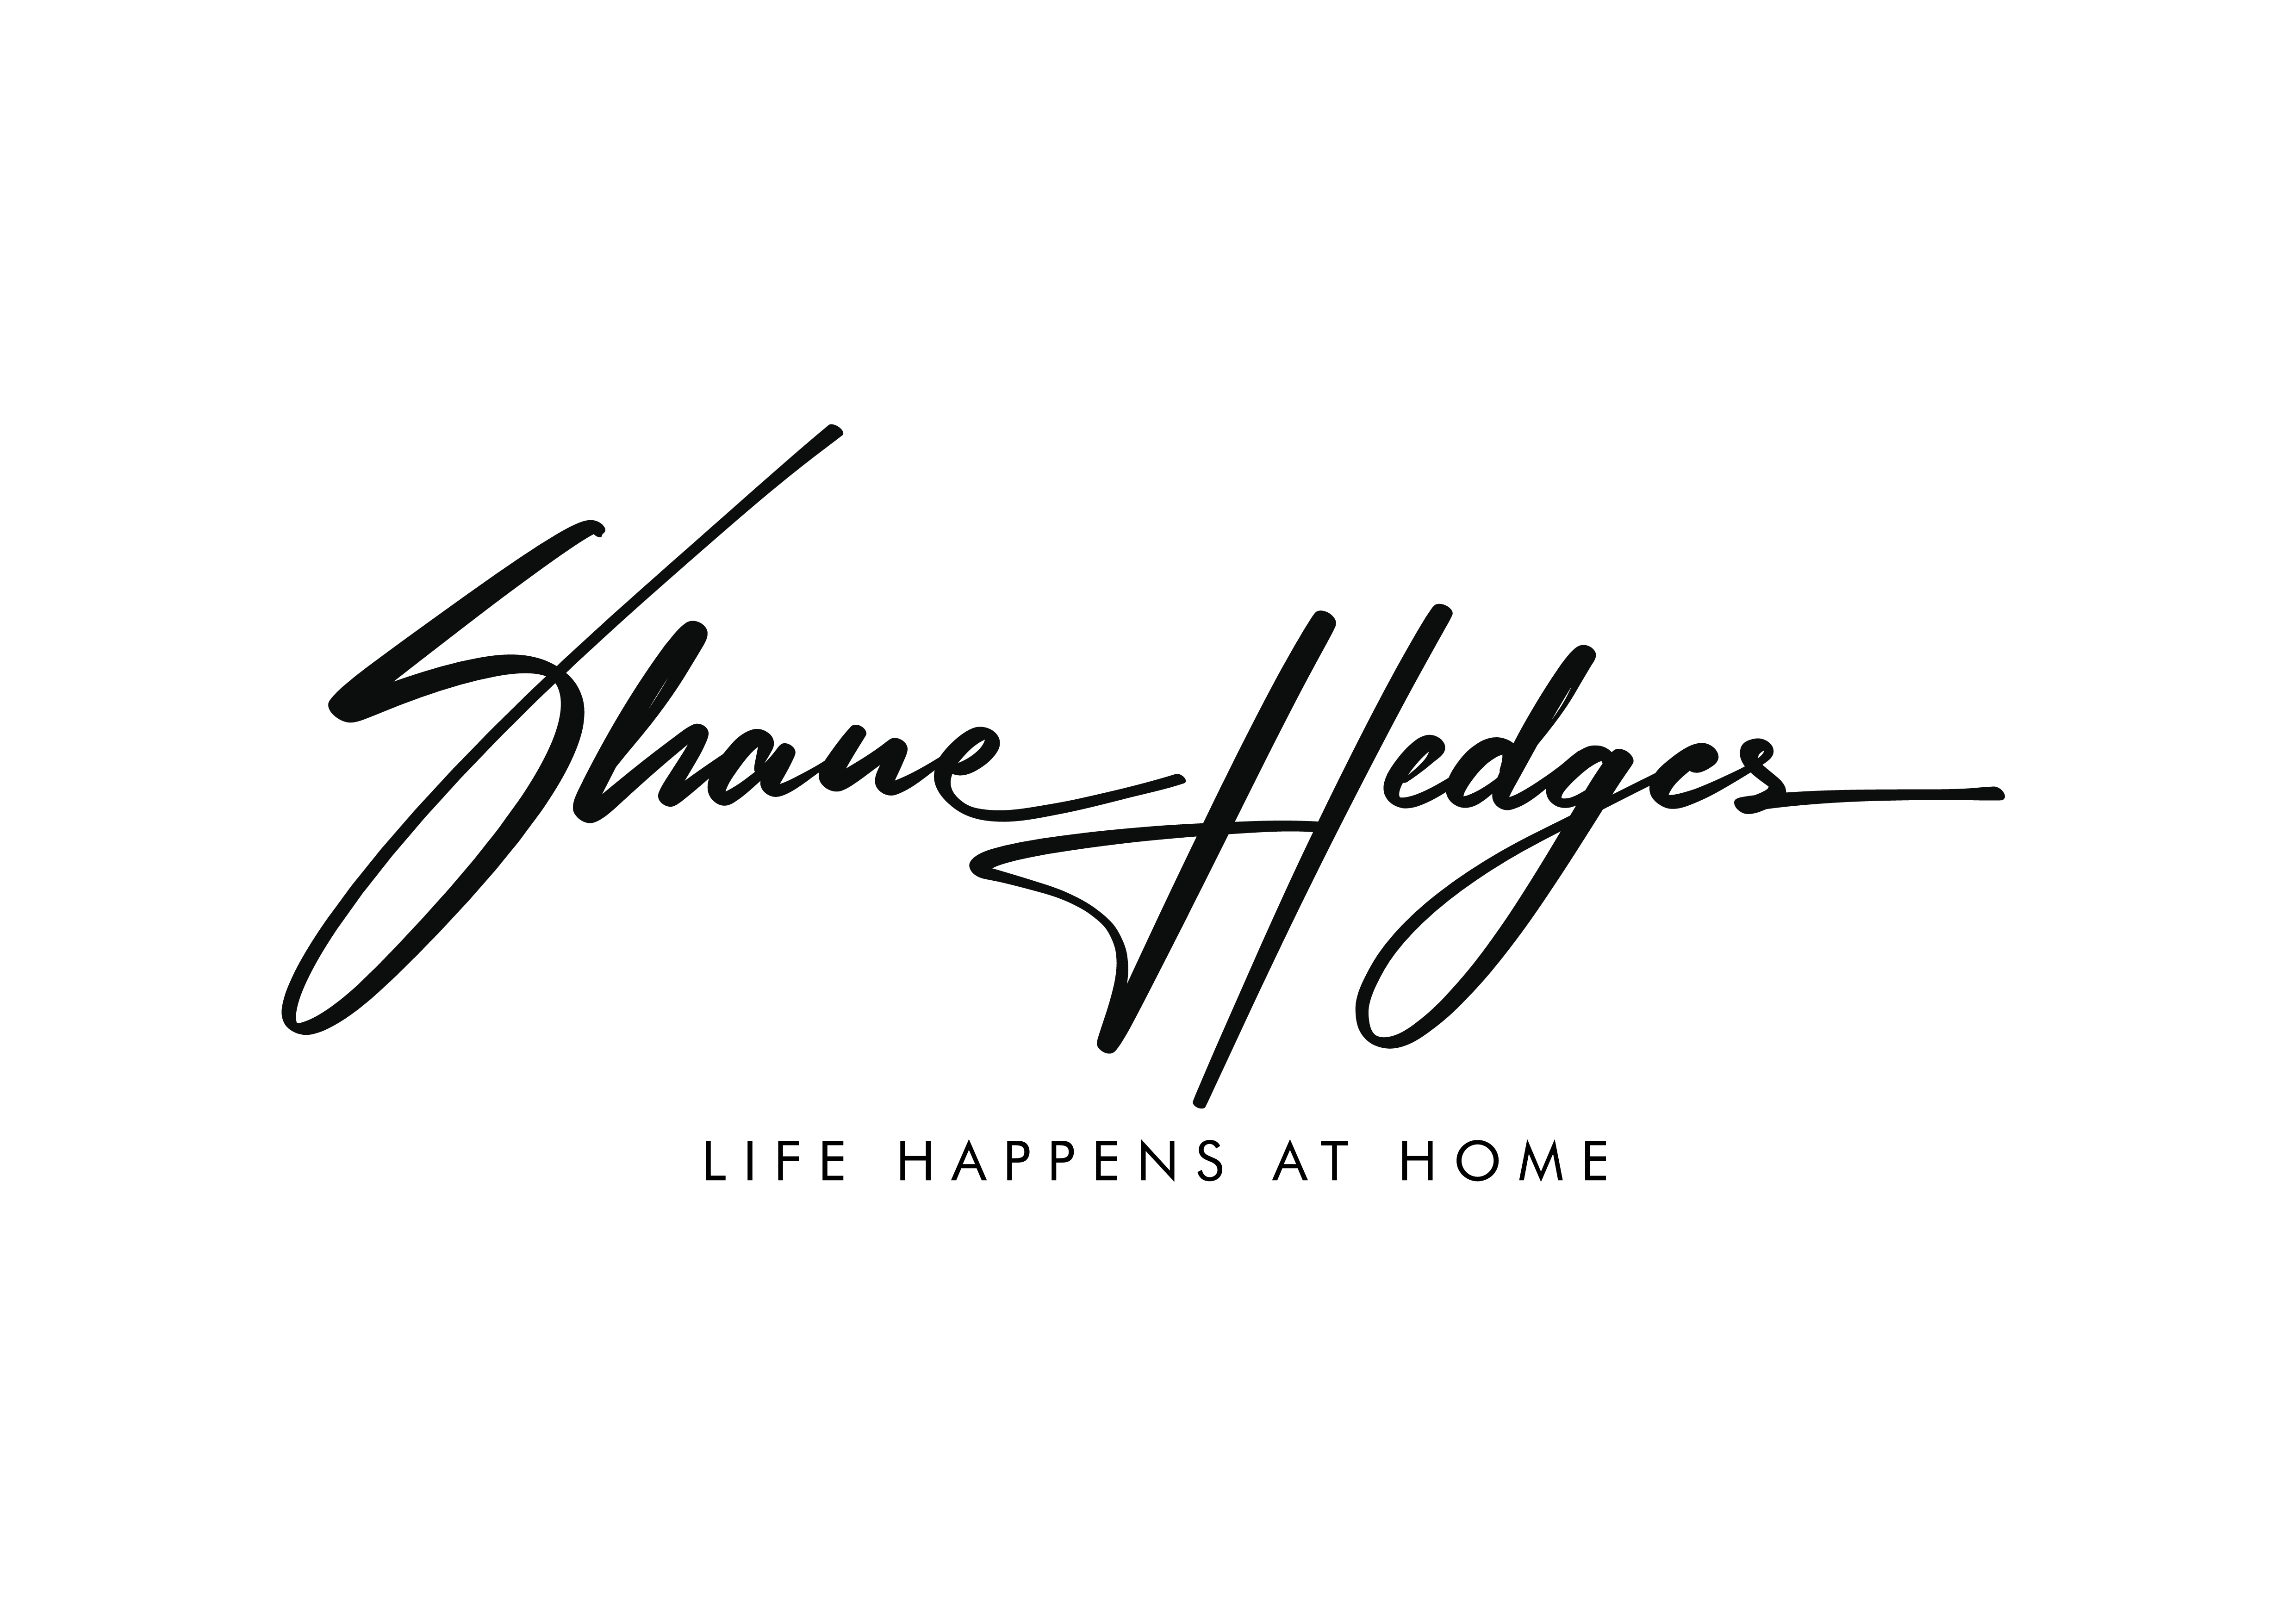 Shane Hedges Real Estate